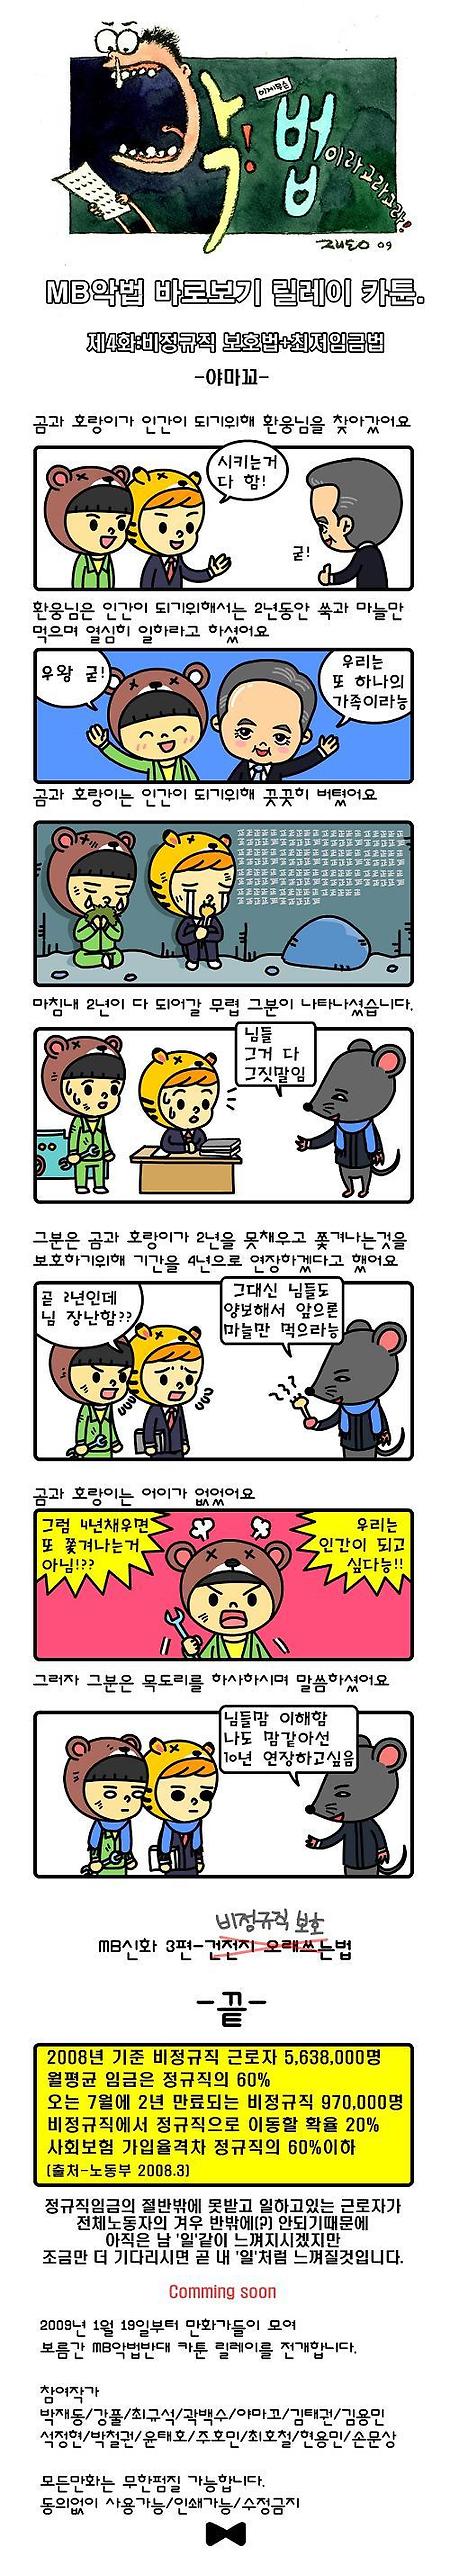 [펌]악법 카툰 릴레이 4화(비정규직법 - 야마꼬)